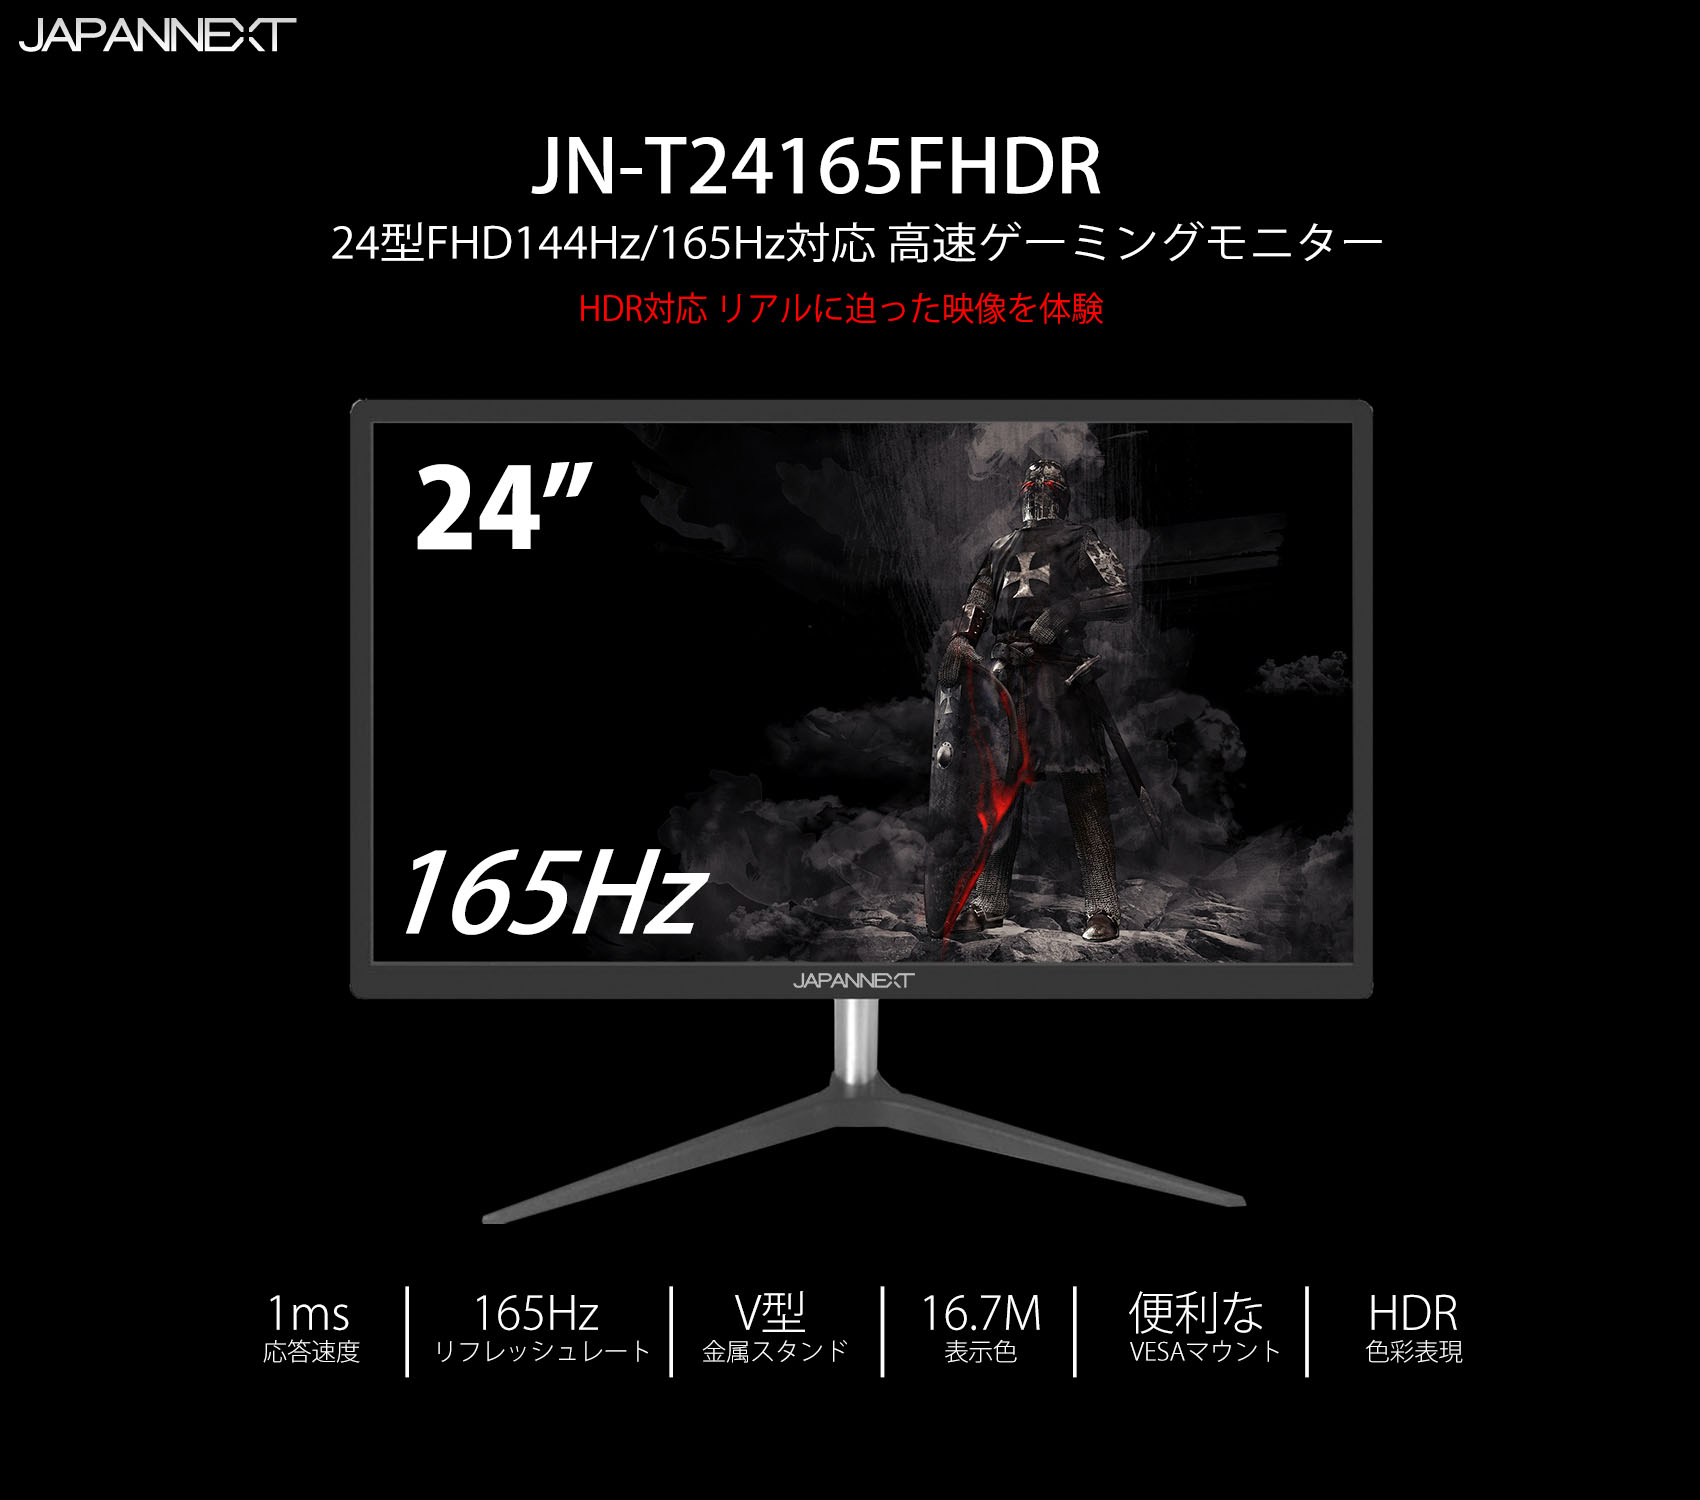 JAPANNEXT JN-T24165FHDR 24インチ 144hz/165Hz ゲーミングモニター RADEON FreeSync 液晶ディスプレイ  – JAPANNEXT 4K WQHDなど超解像度、ゲーミング、曲面など特殊液晶モニター